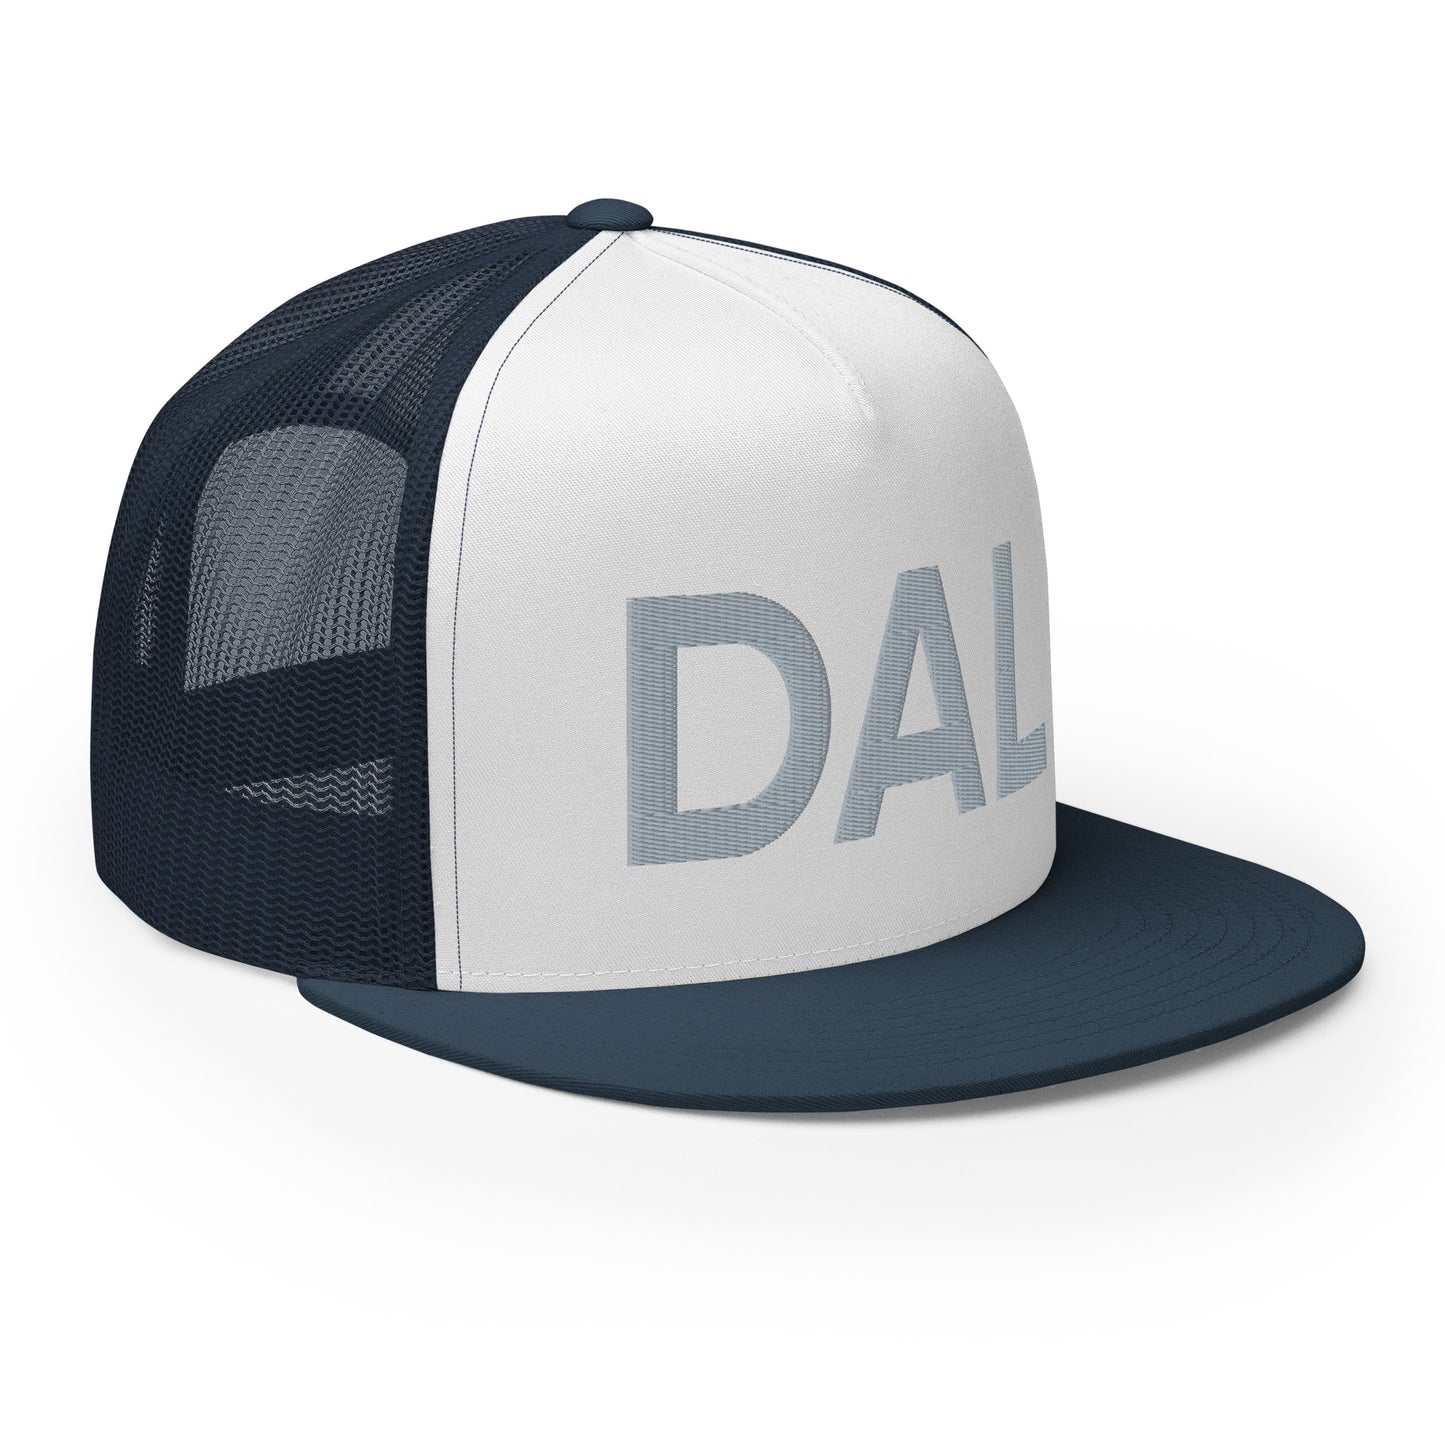 DAL Dallas Nation Trucker Hat